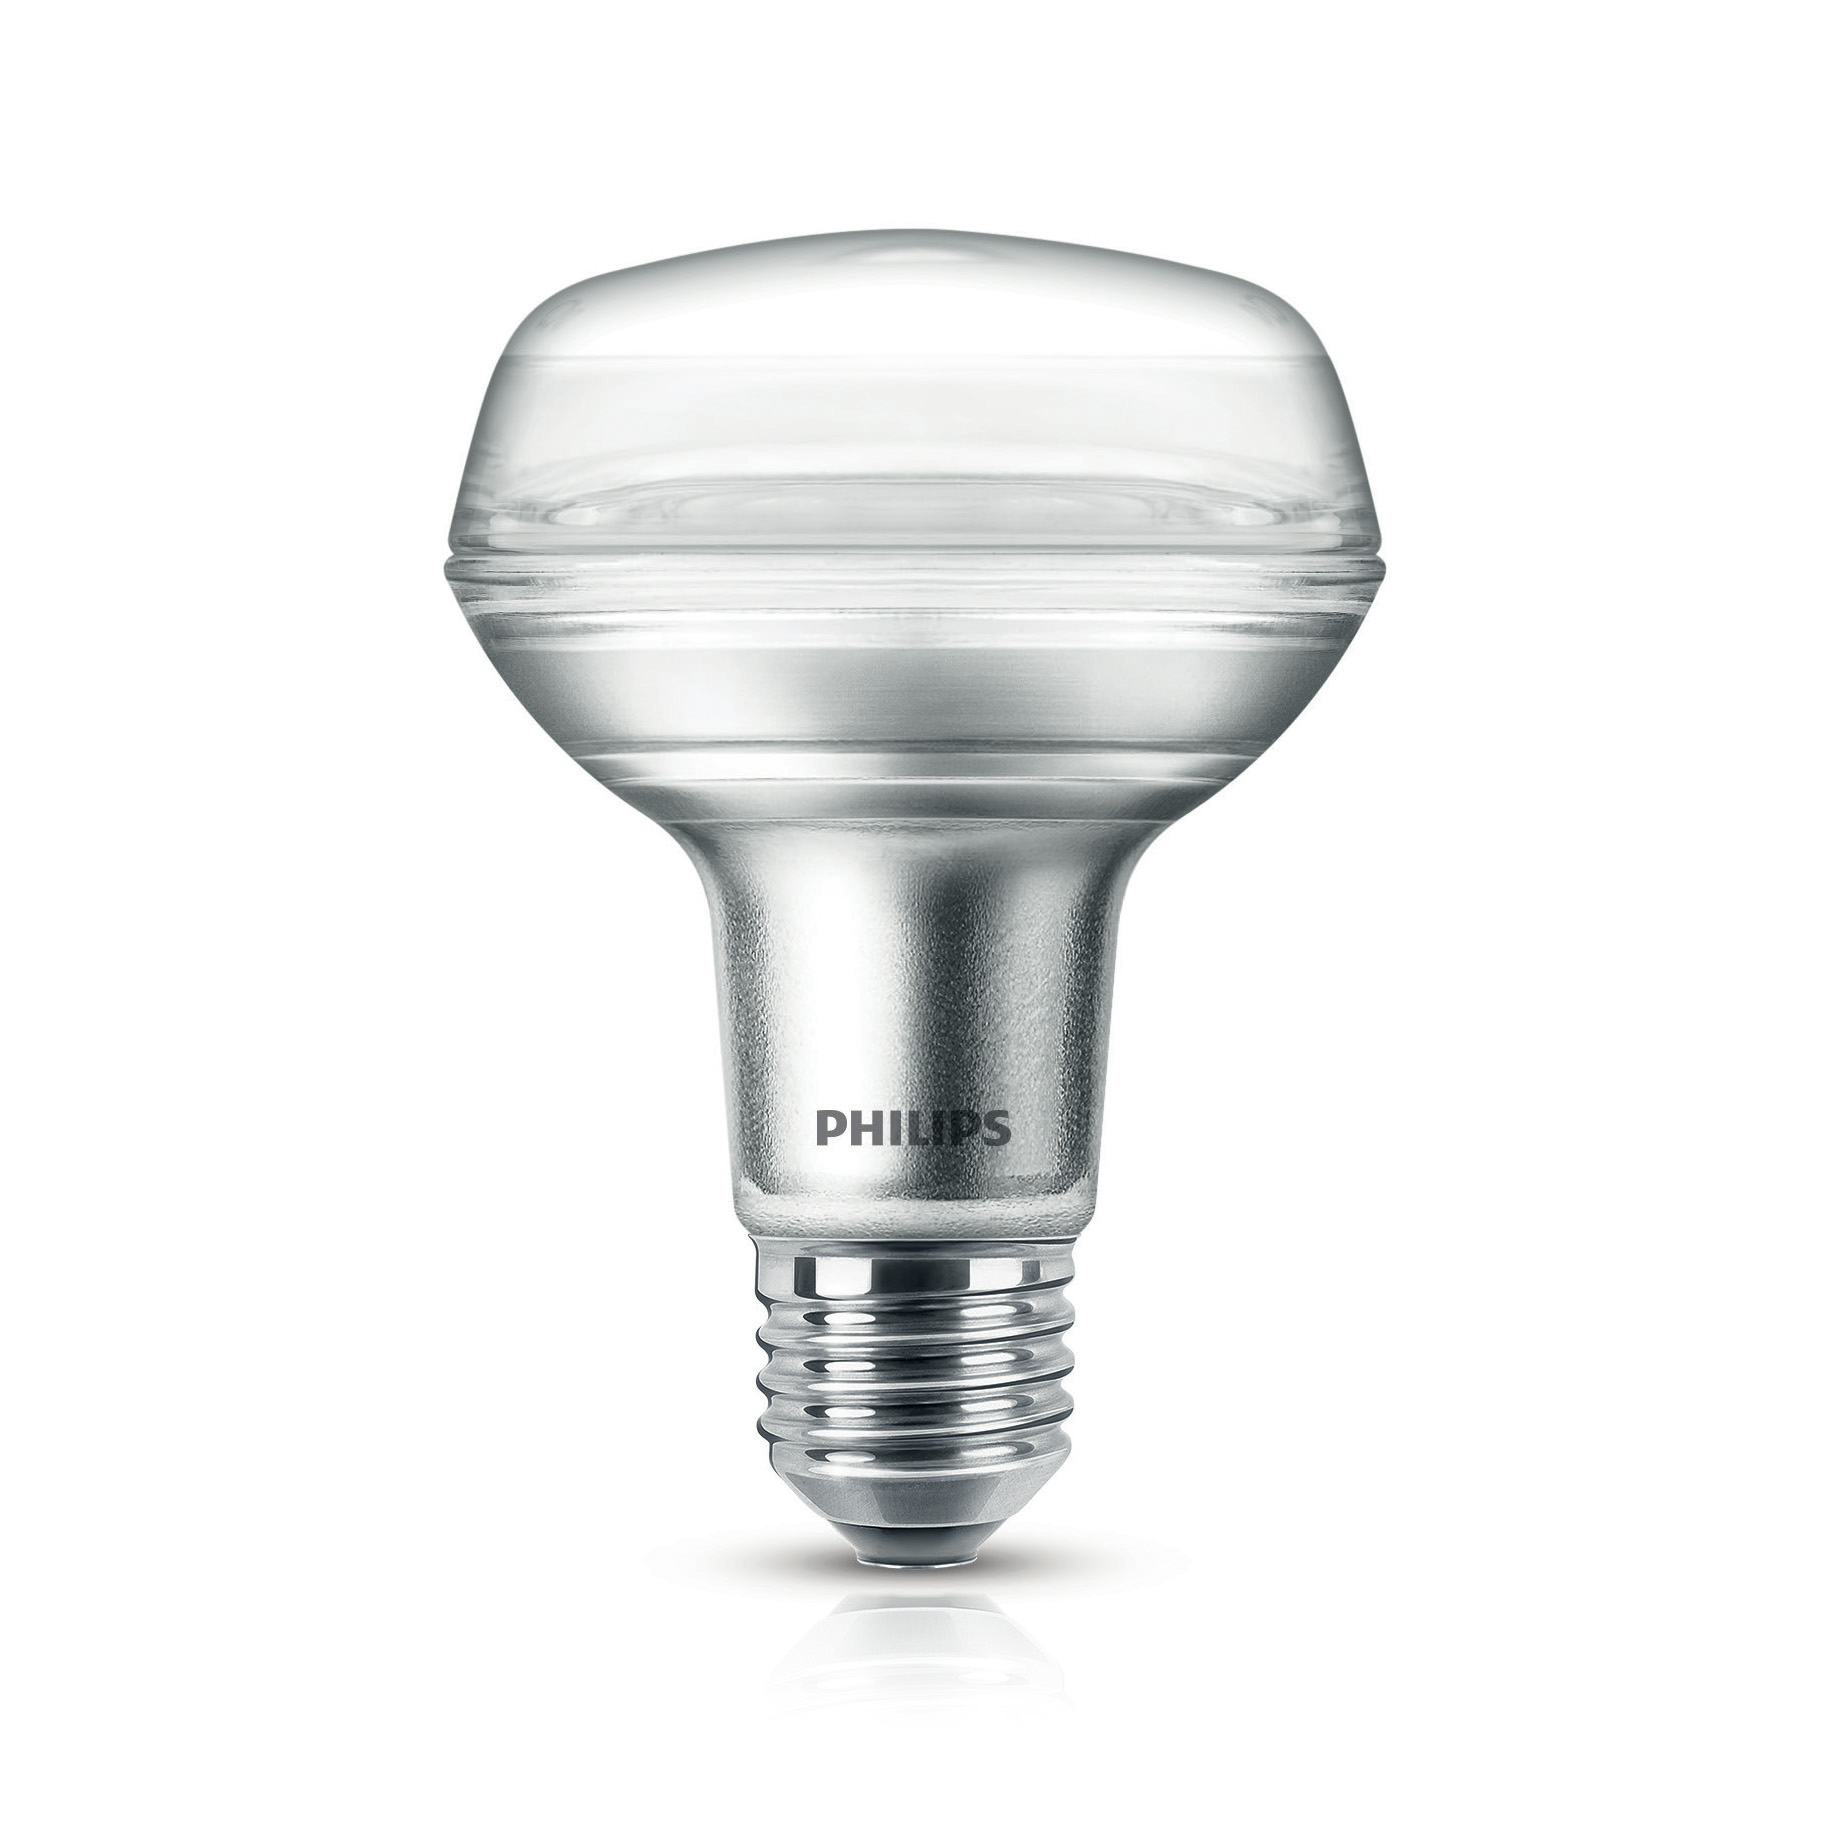 Philips CorePro LEDspot 8-100W E27 827 R80 36° 735lm 2700K CRI80